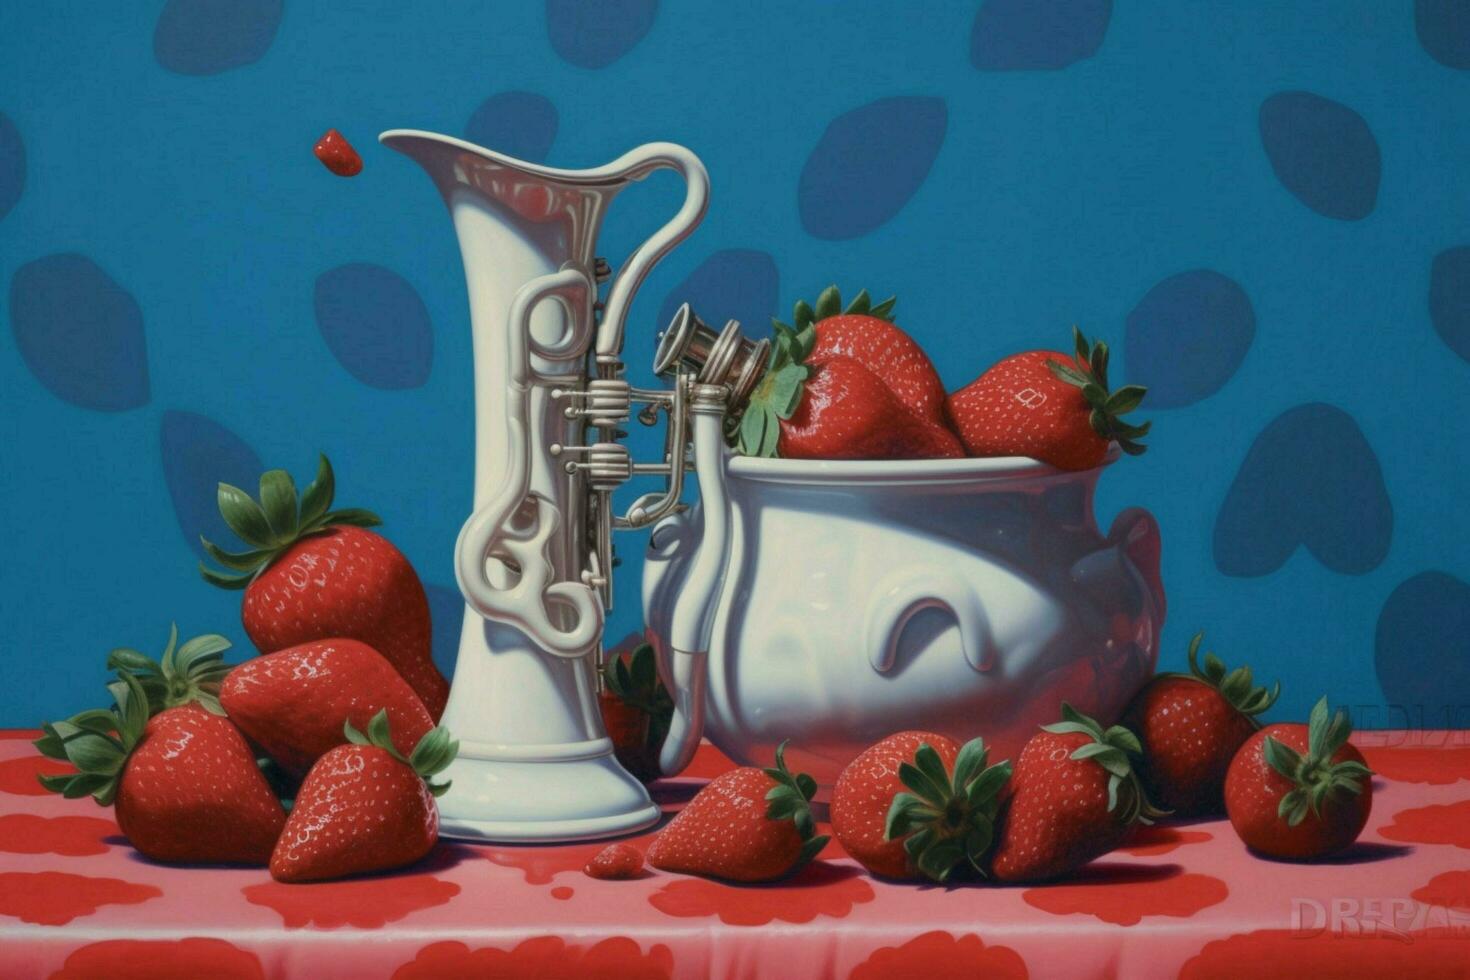 Pepsi Jazz Strawberries Cream photo